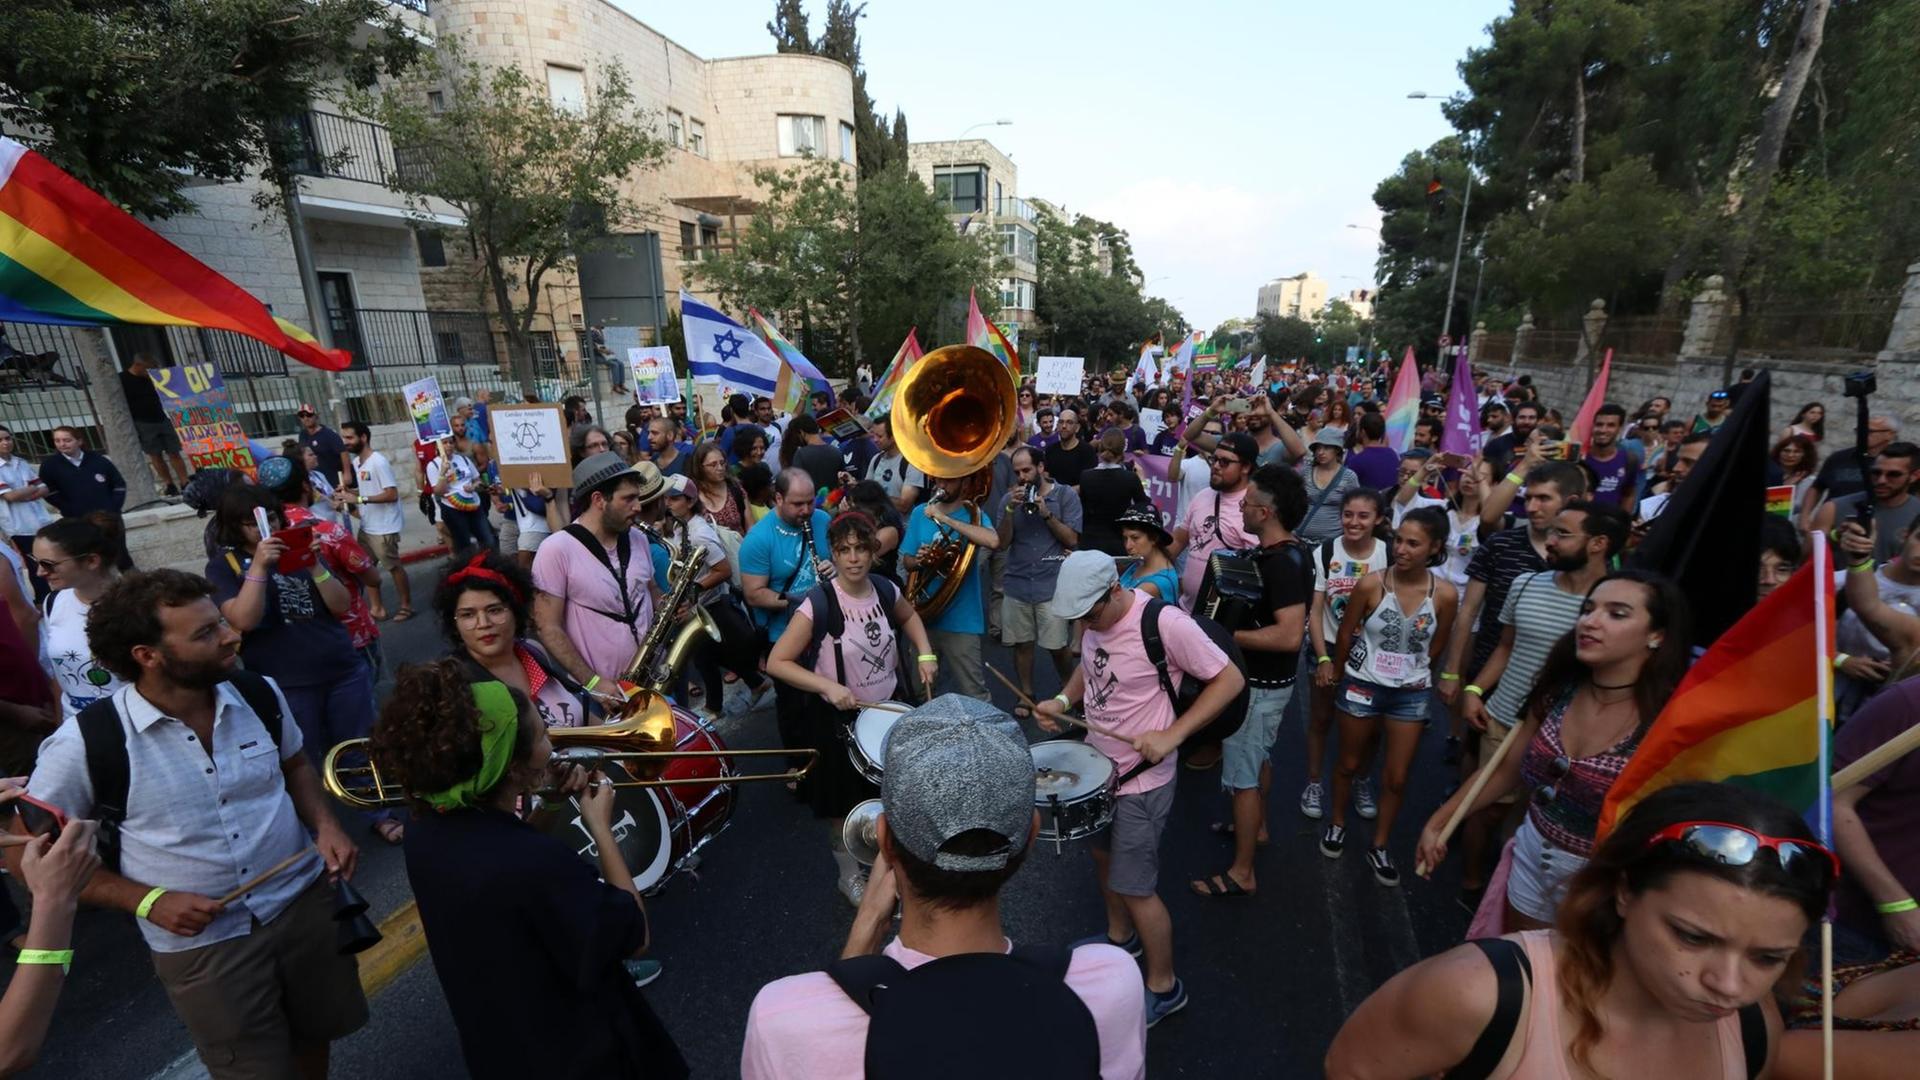 Regenbogenfarben in Jerusalem: untermalt von der Brassband "Las Piratas Piratas"